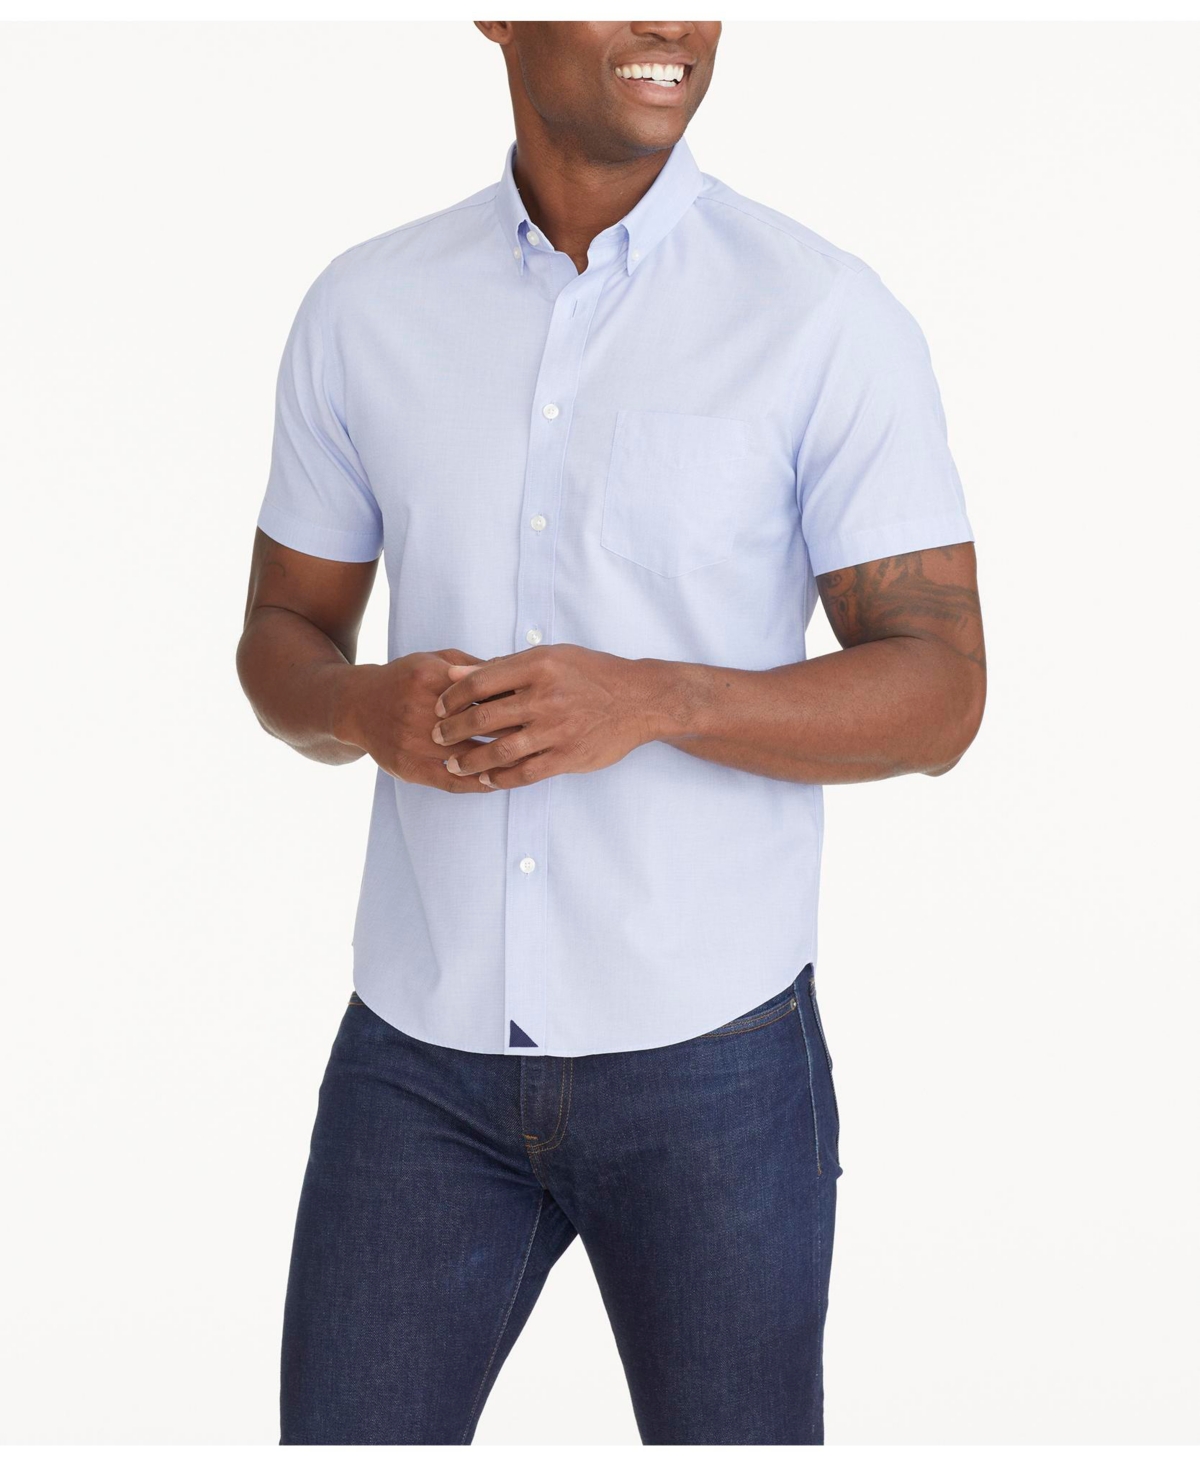 Untuck it Men's Regular Fit Wrinkle-Free Short-Sleeve Hillstowe Button Up Shirt - Blue